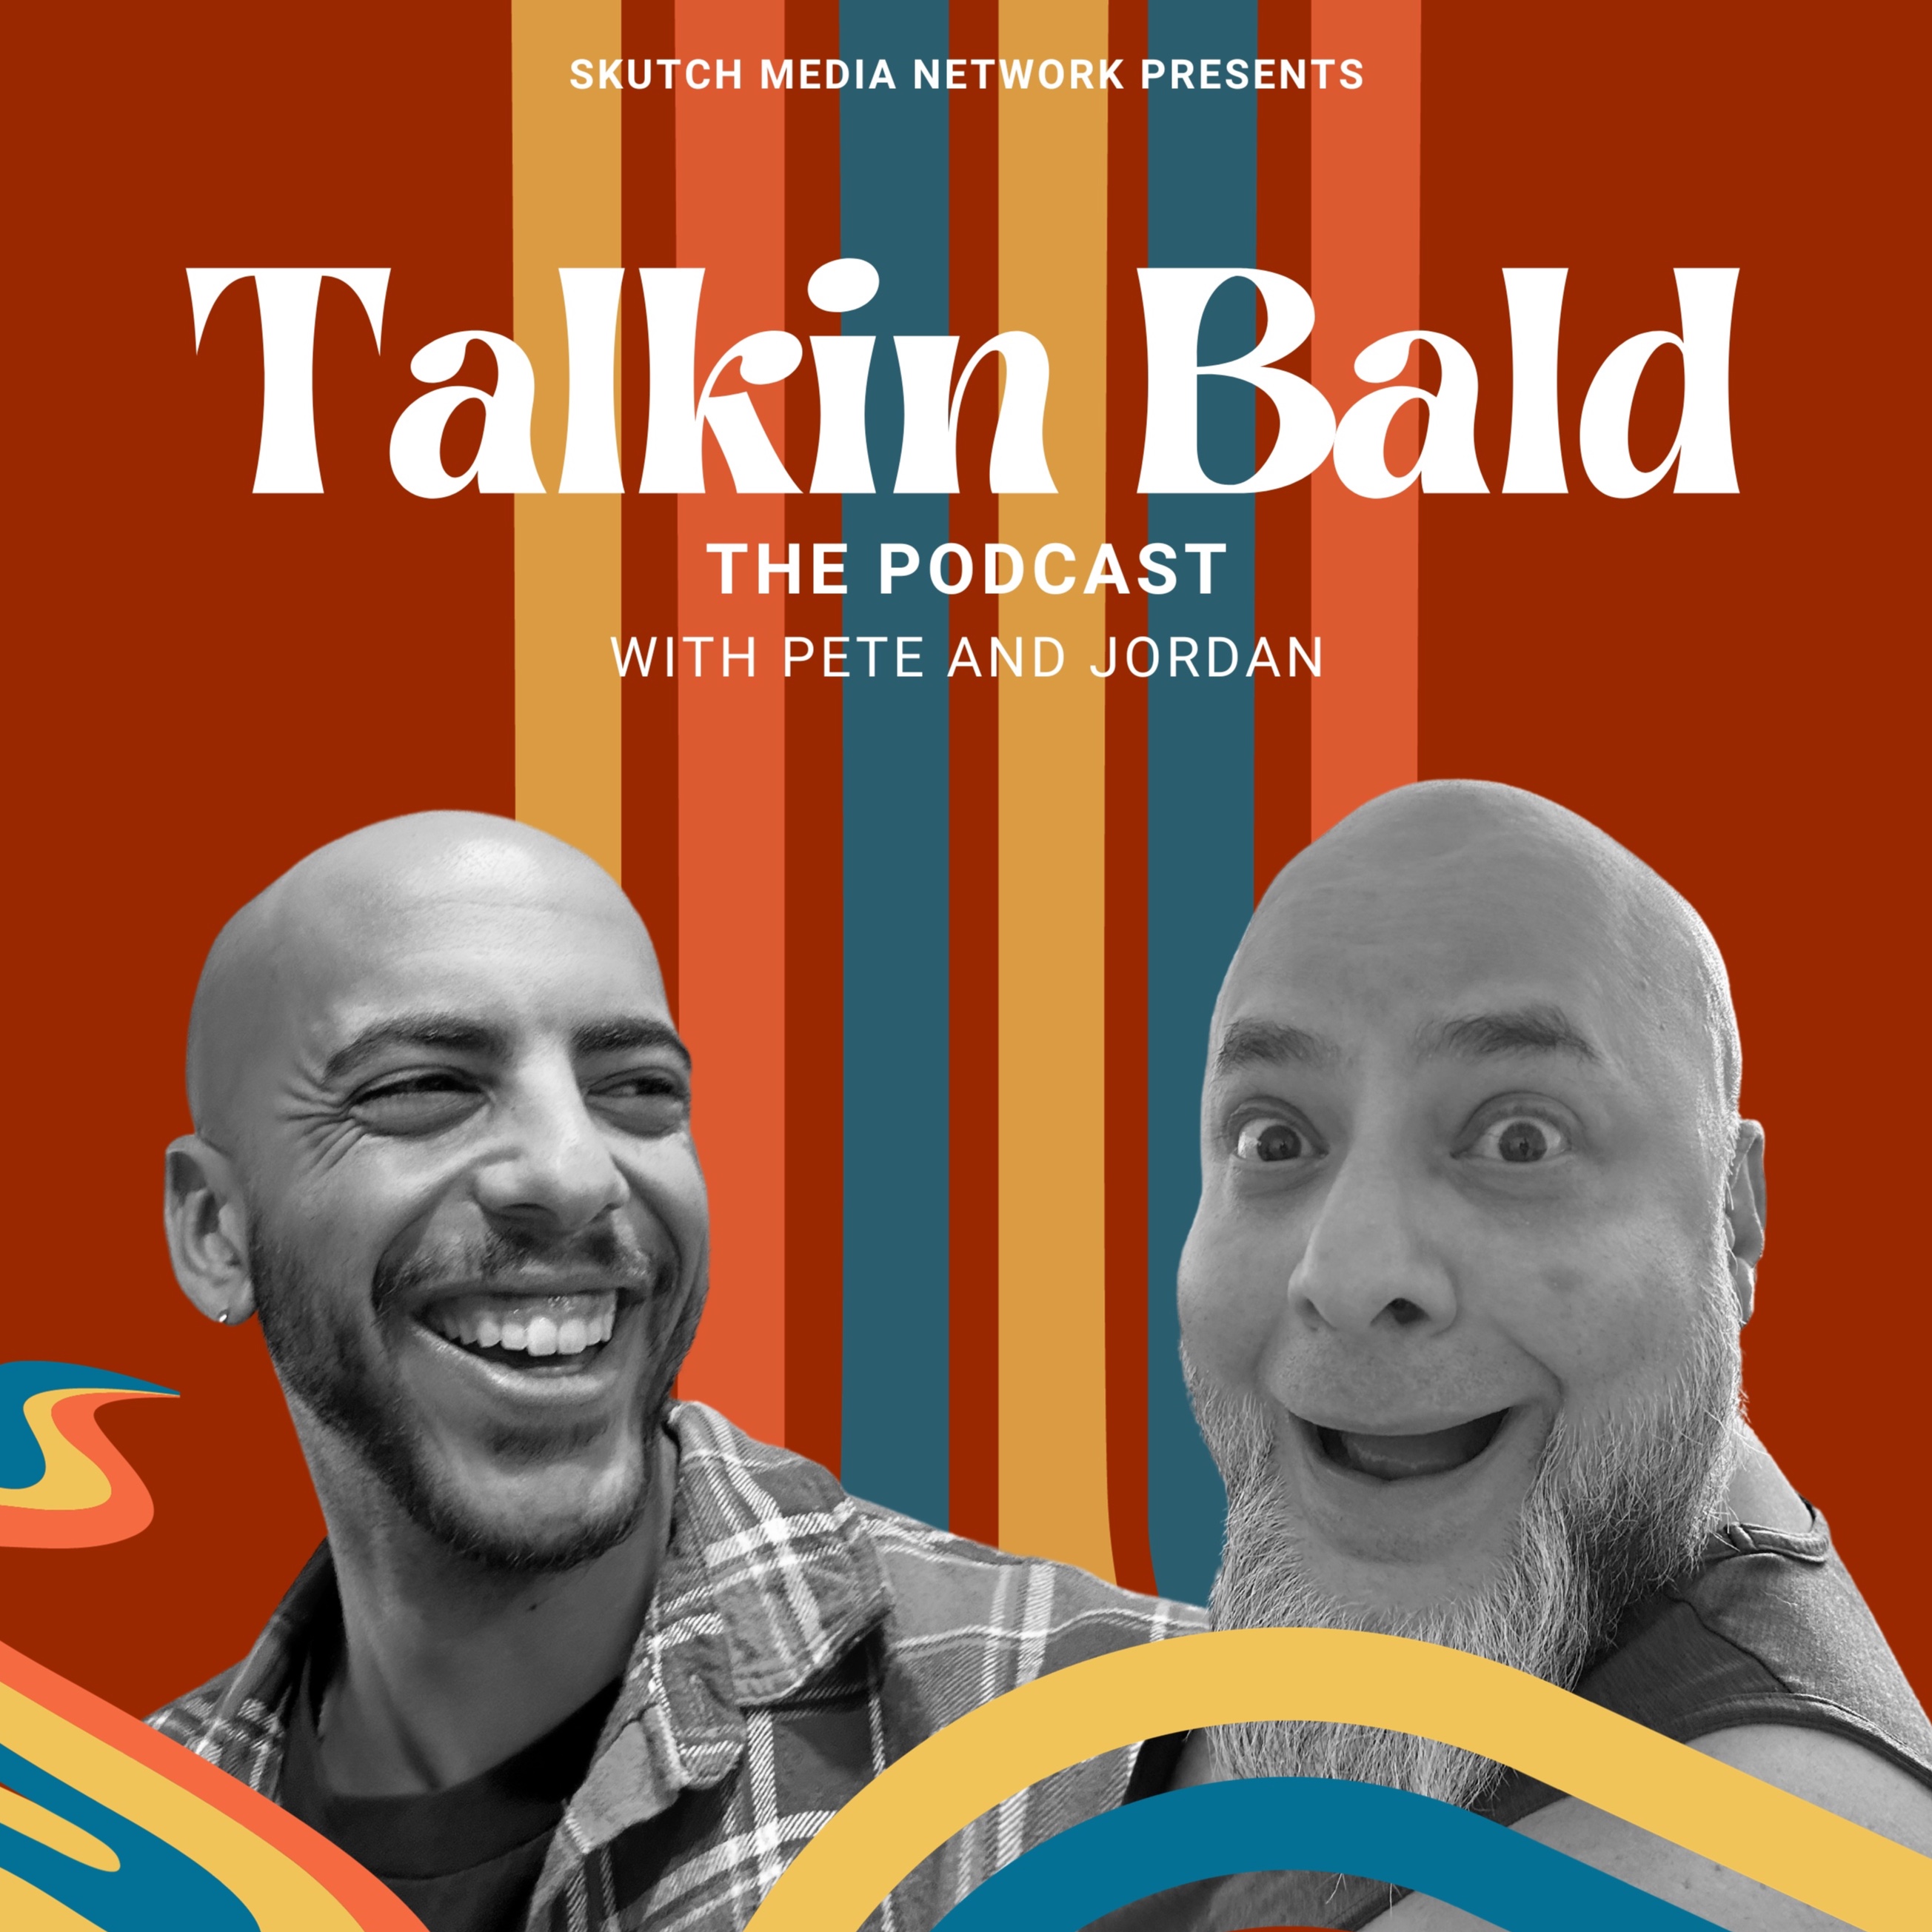 Talkin Bald